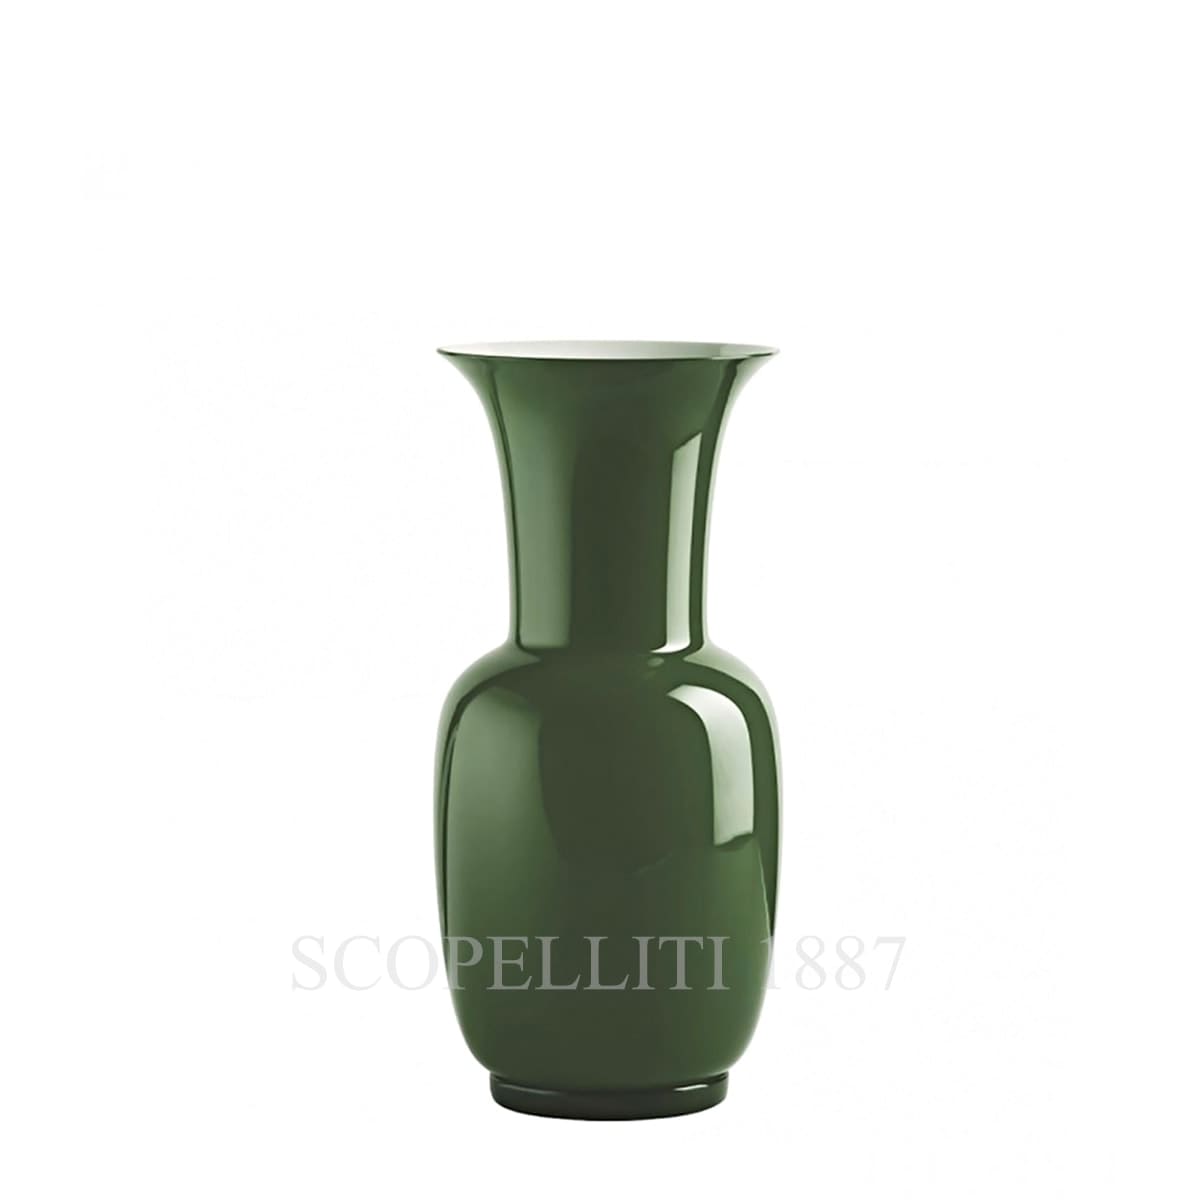 venini italian glass vase green